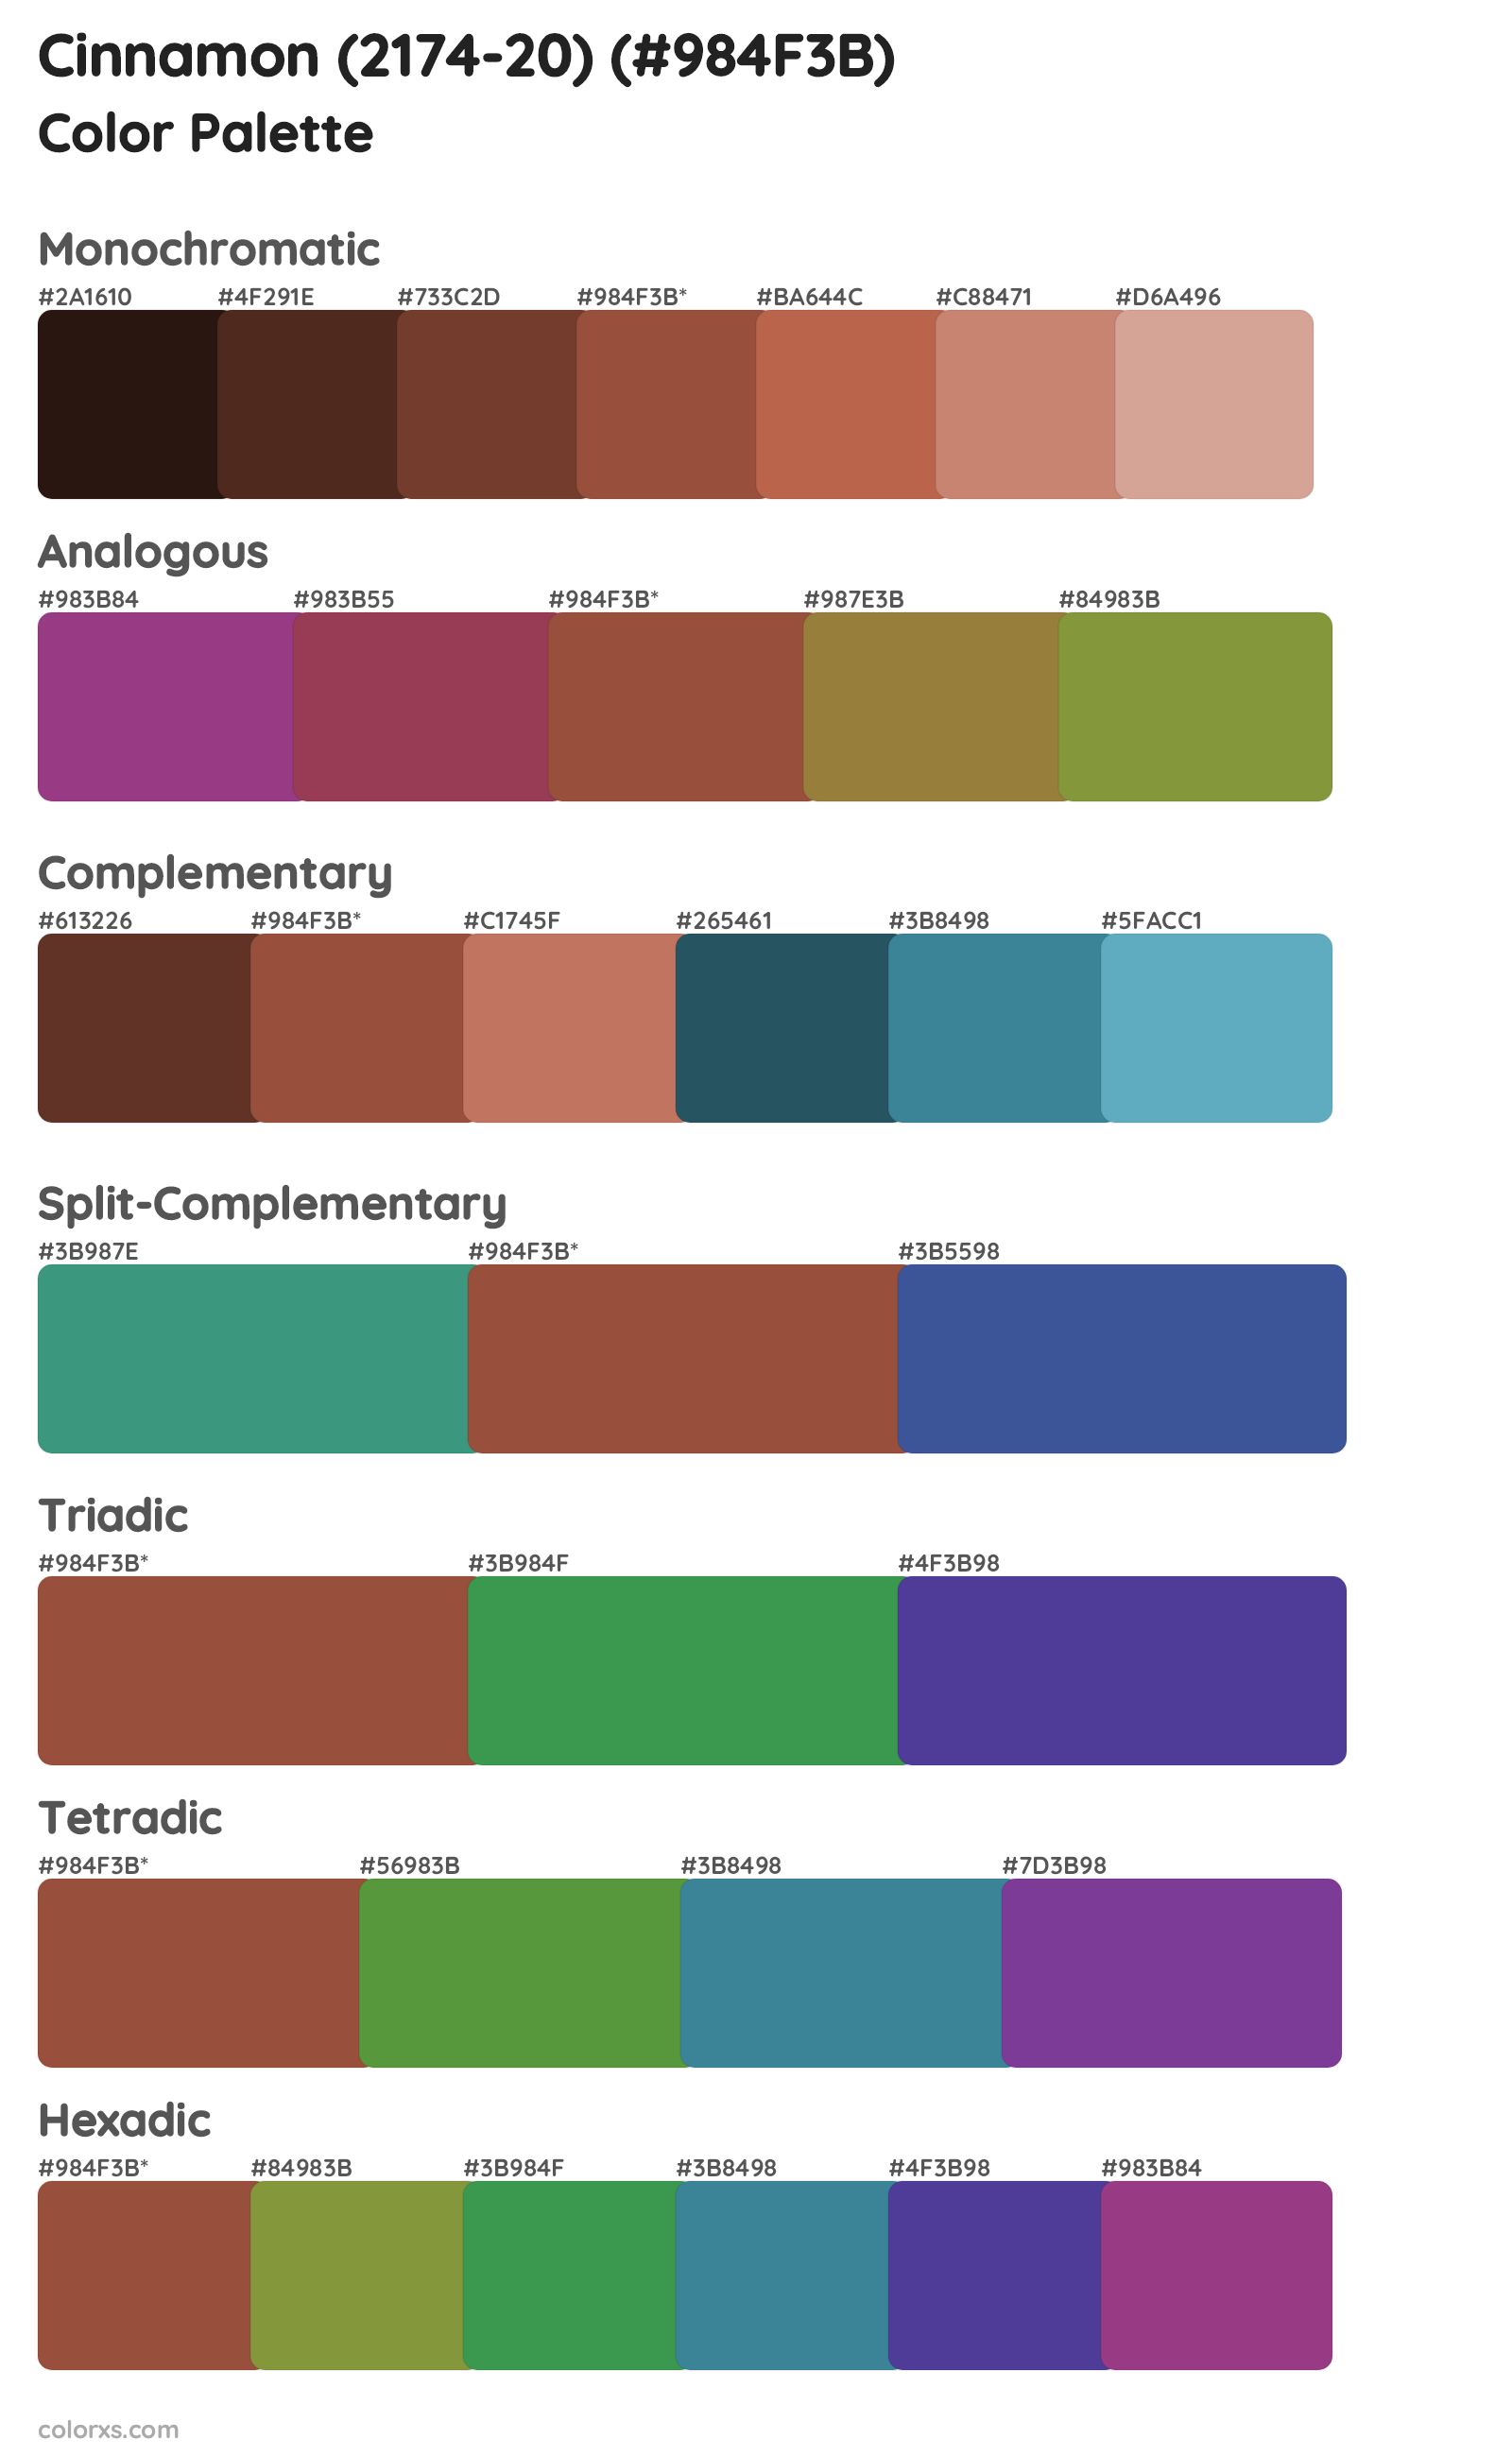 Cinnamon (2174-20) Color Scheme Palettes